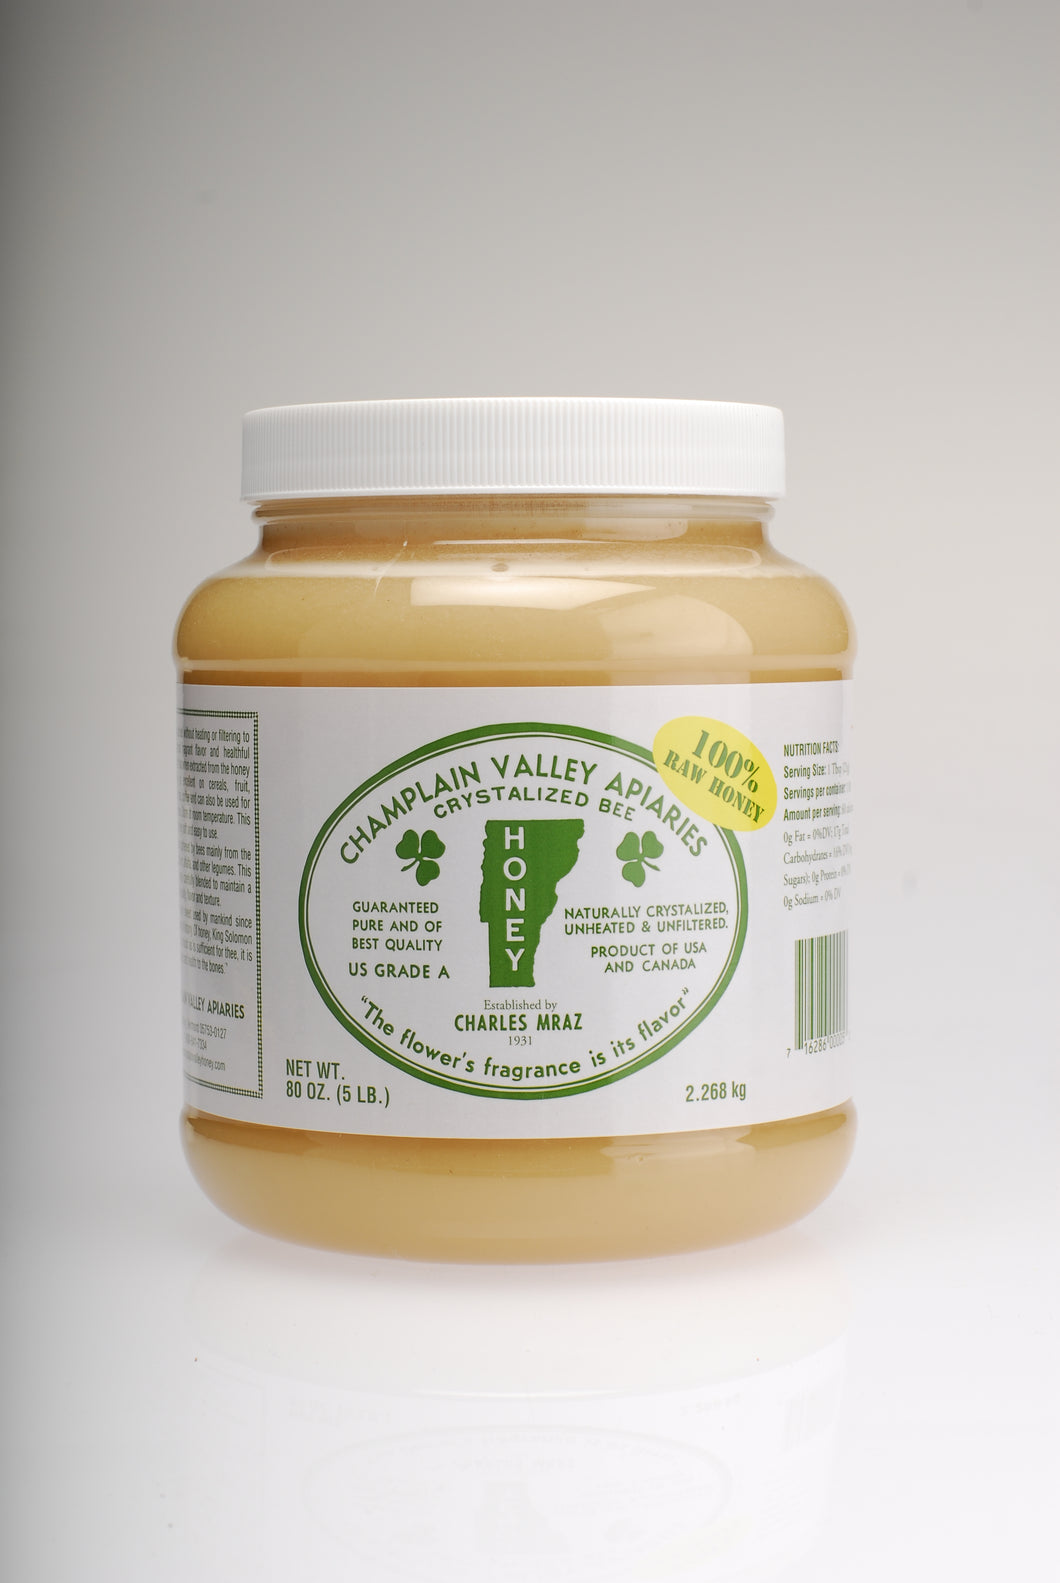 Vermont Raw Honey - 5lb